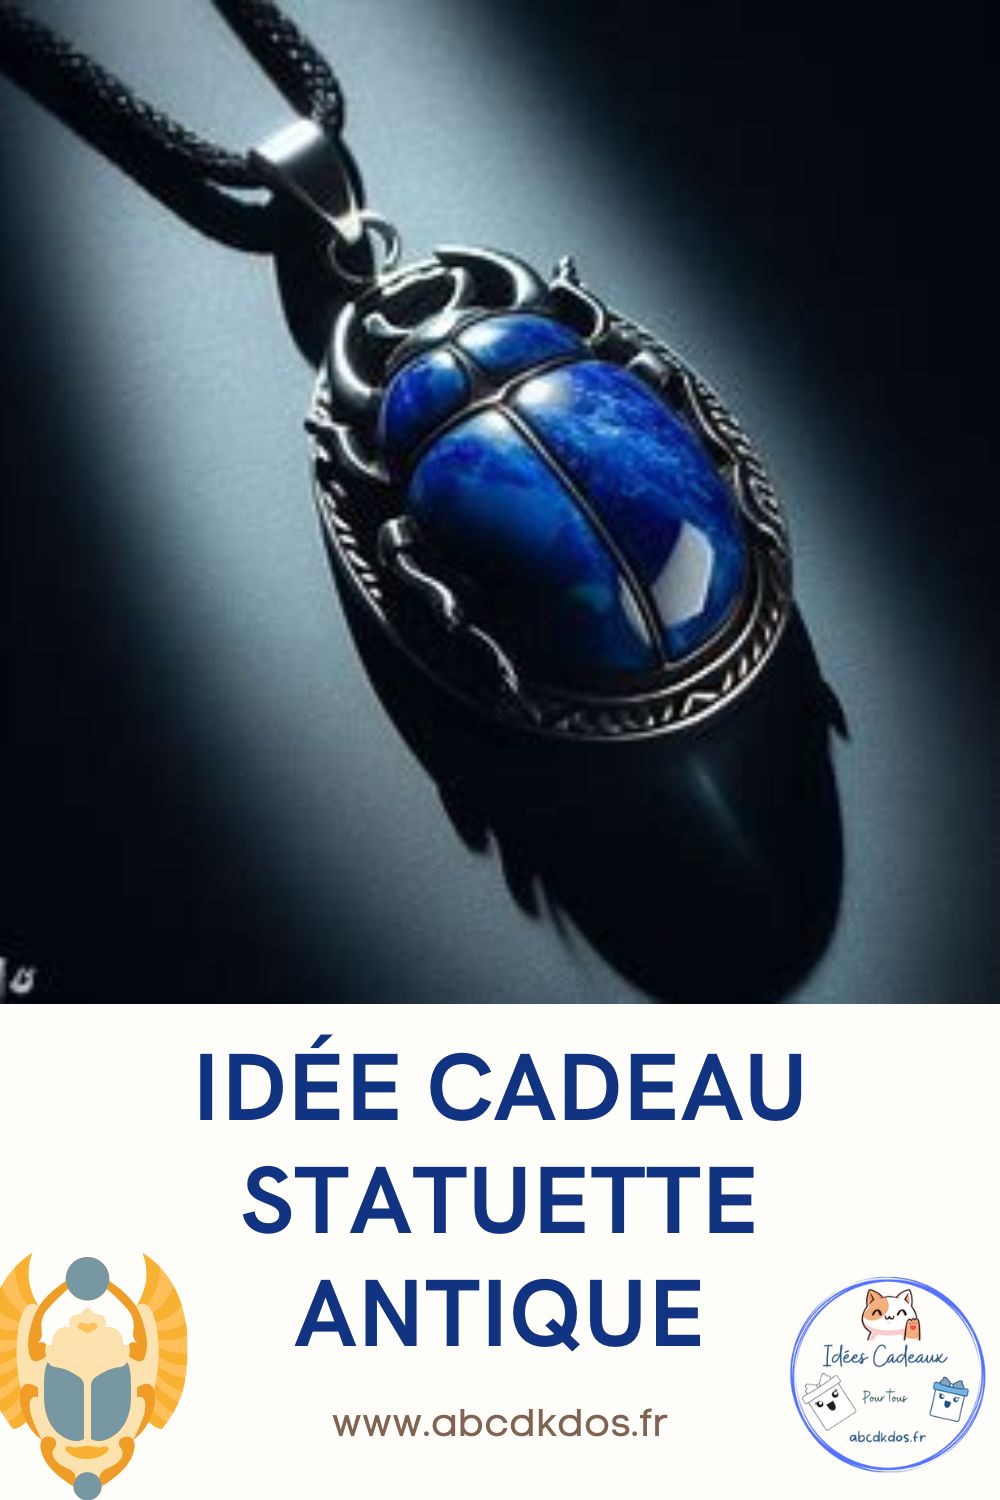 You are currently viewing Idée cadeau, statuette antique et sacrée